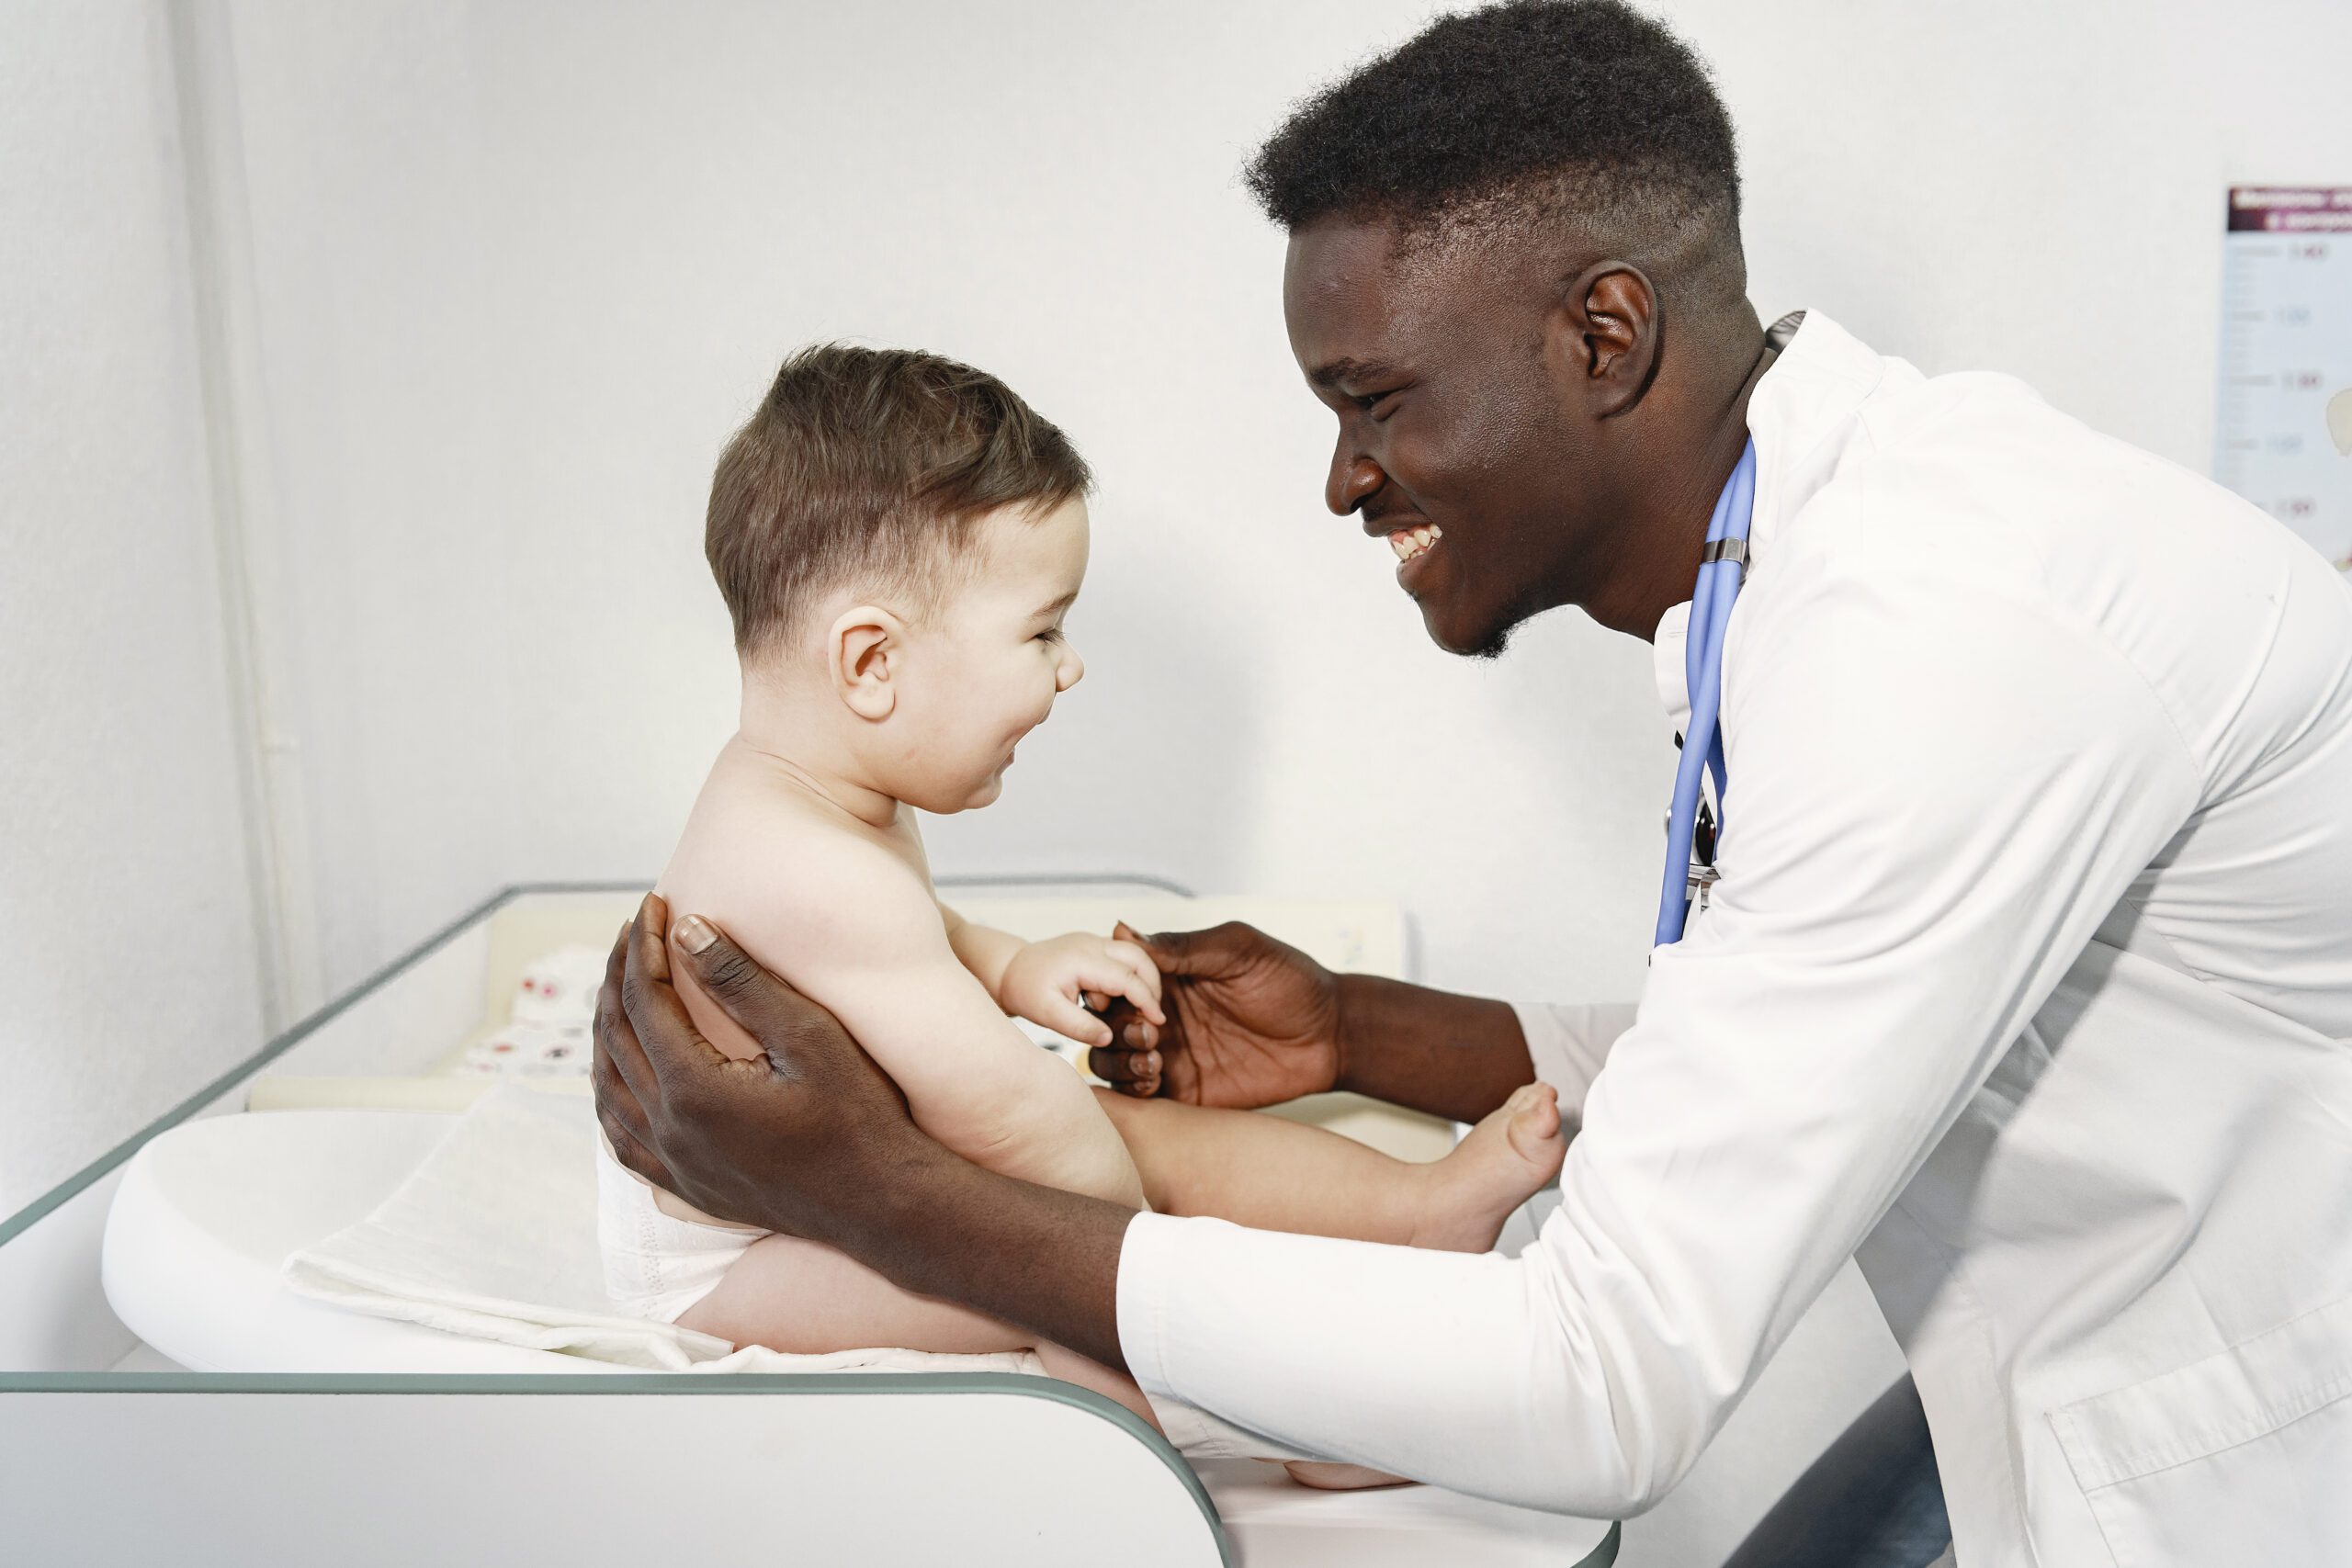 Especialidades médicas: clínica médica e pediatria são as mais comuns